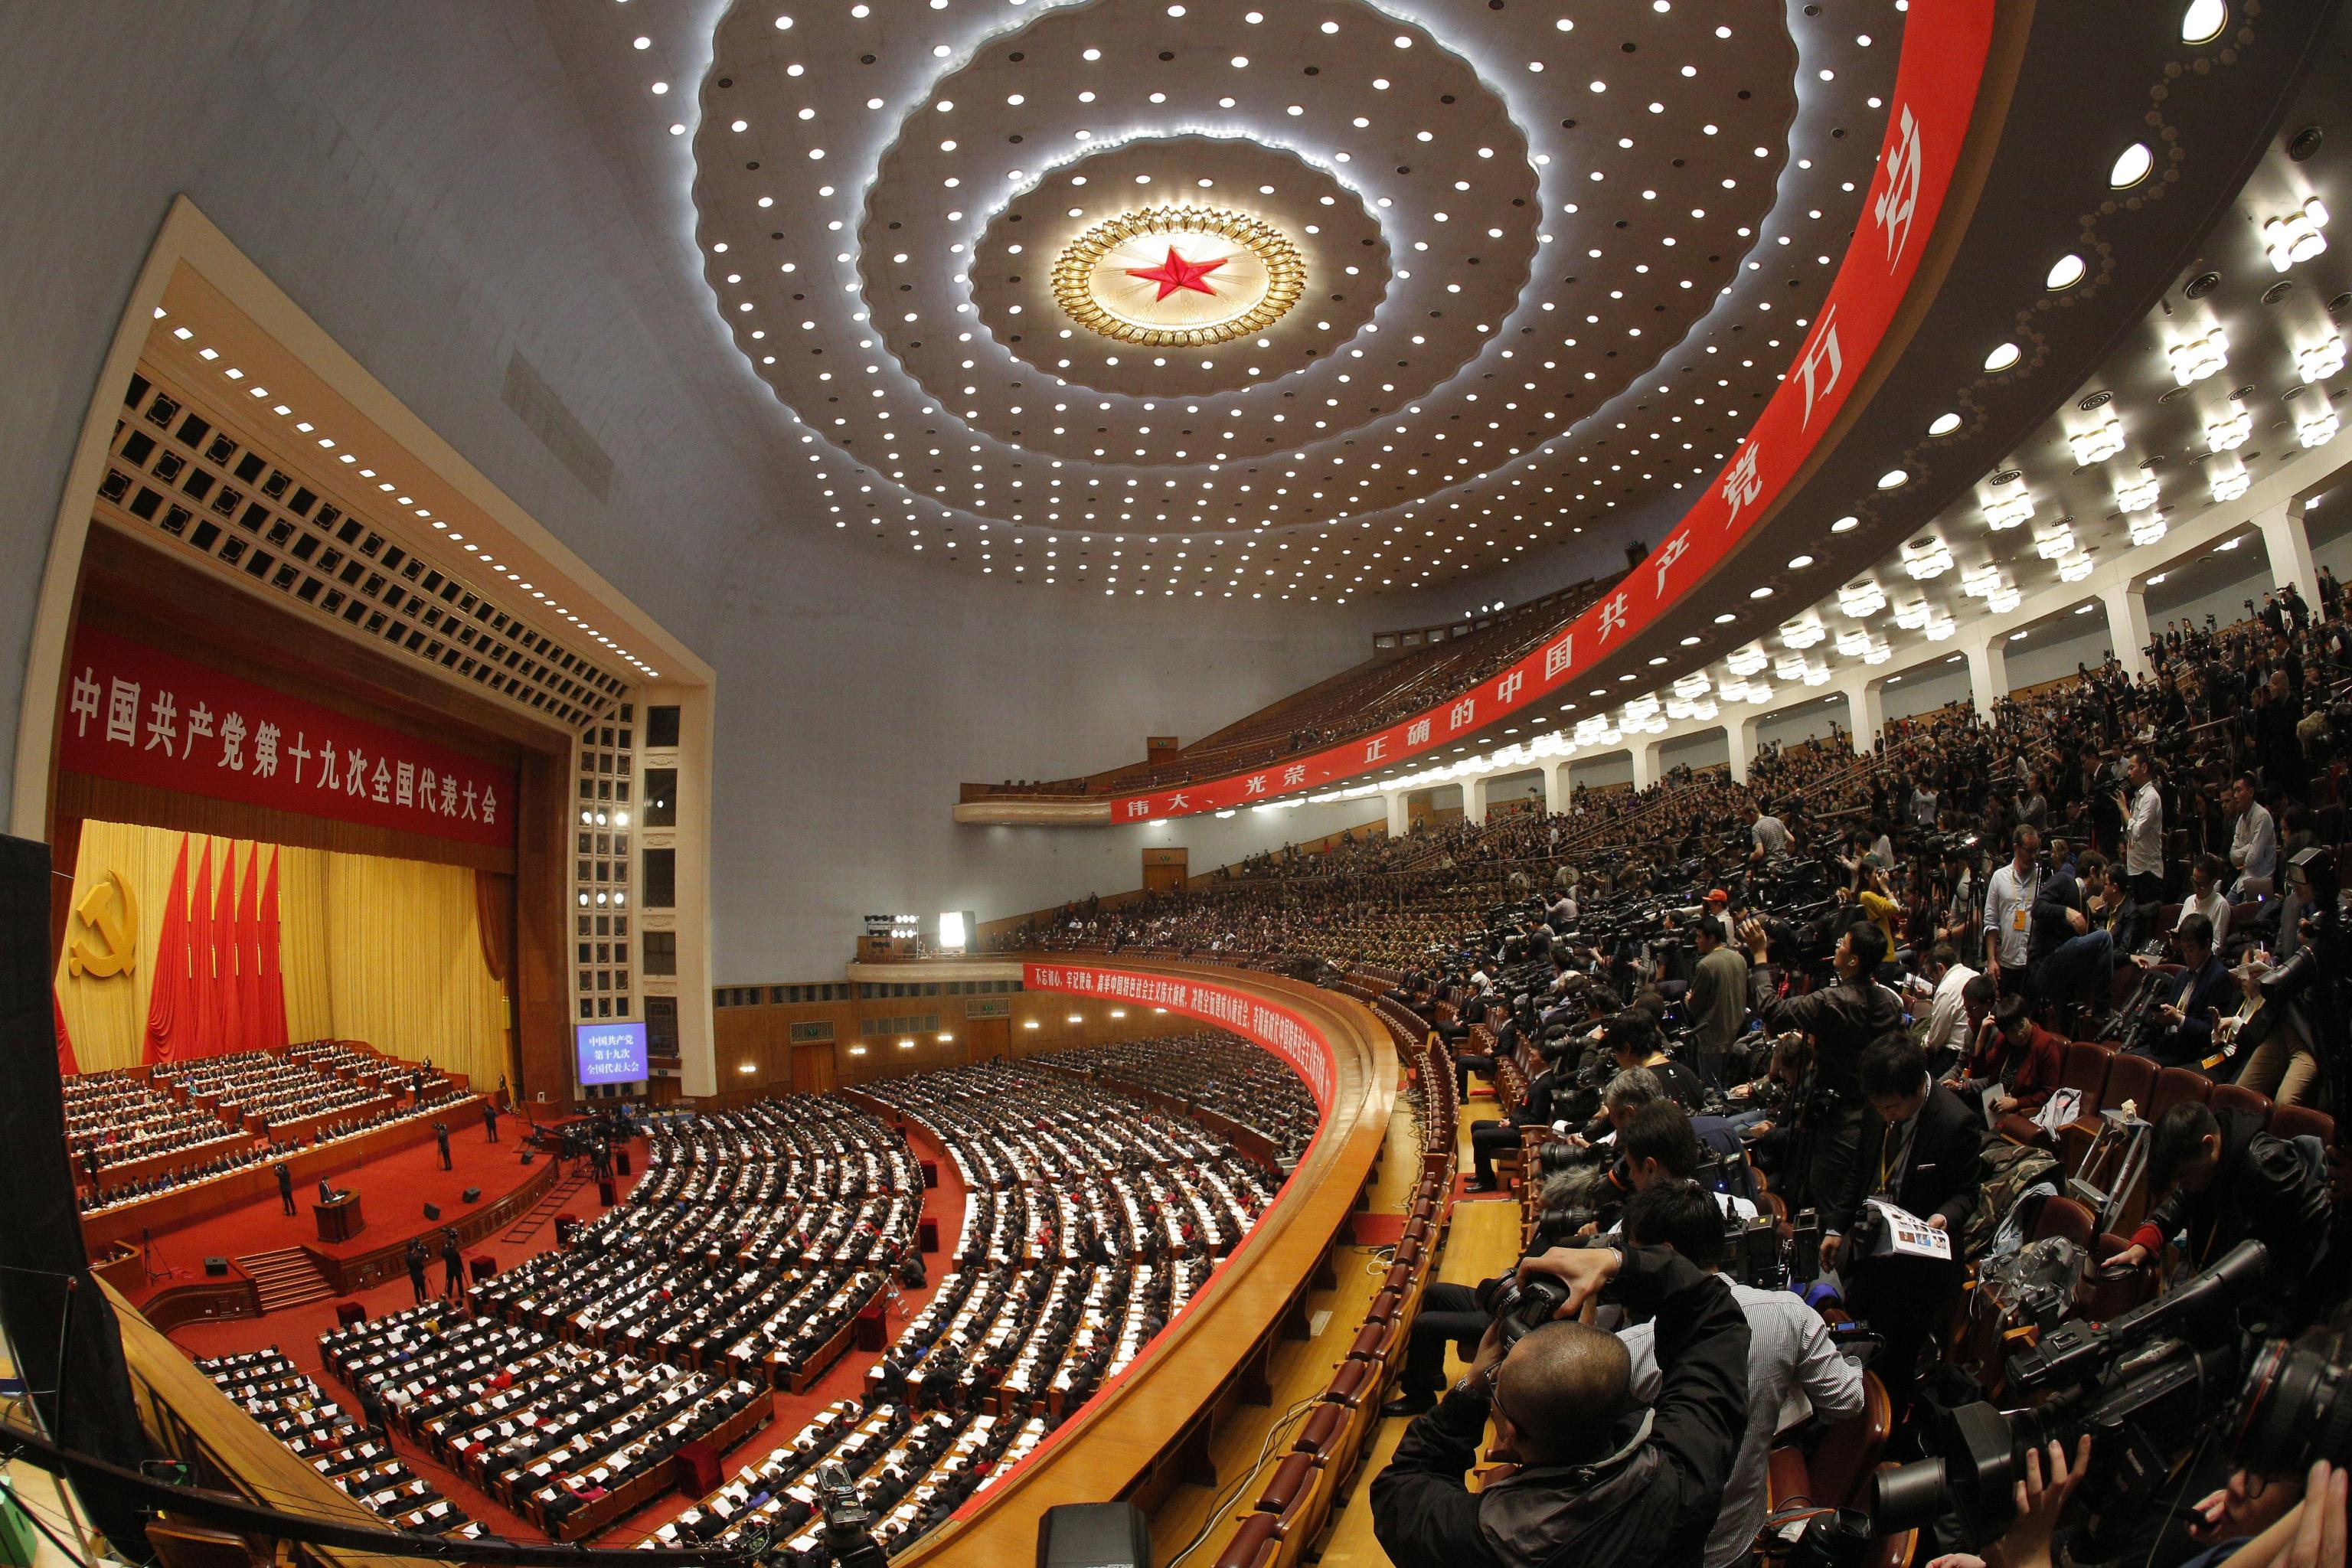 Una veduta panoramica della Great Hall of the People a Pechino, sede del Congresso